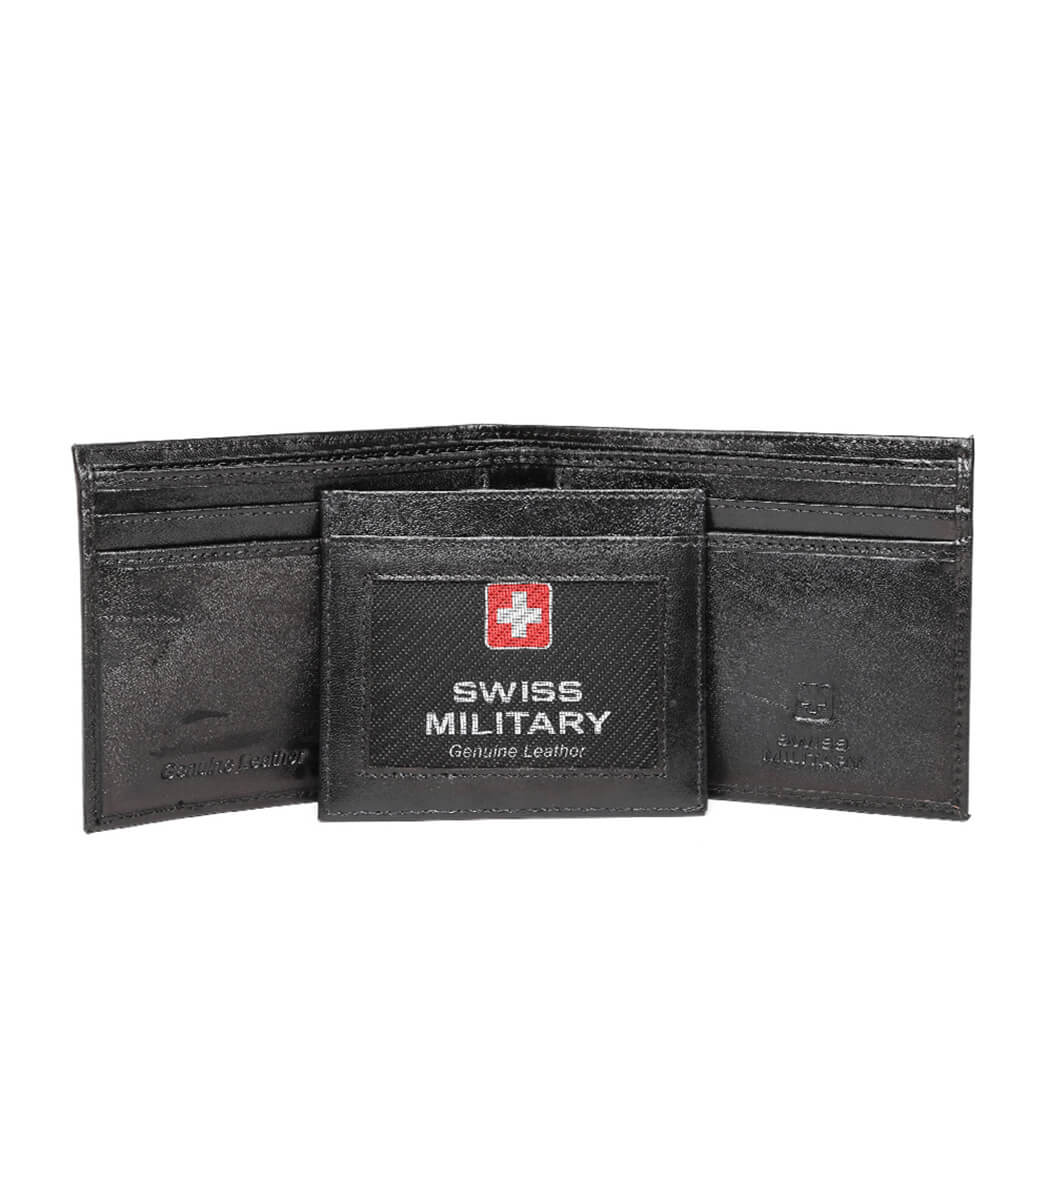 Vintage Swiss Army Belt Pouch Leather Ammo Bag J. Koch Sattler Bremgarten  1965 | eBay